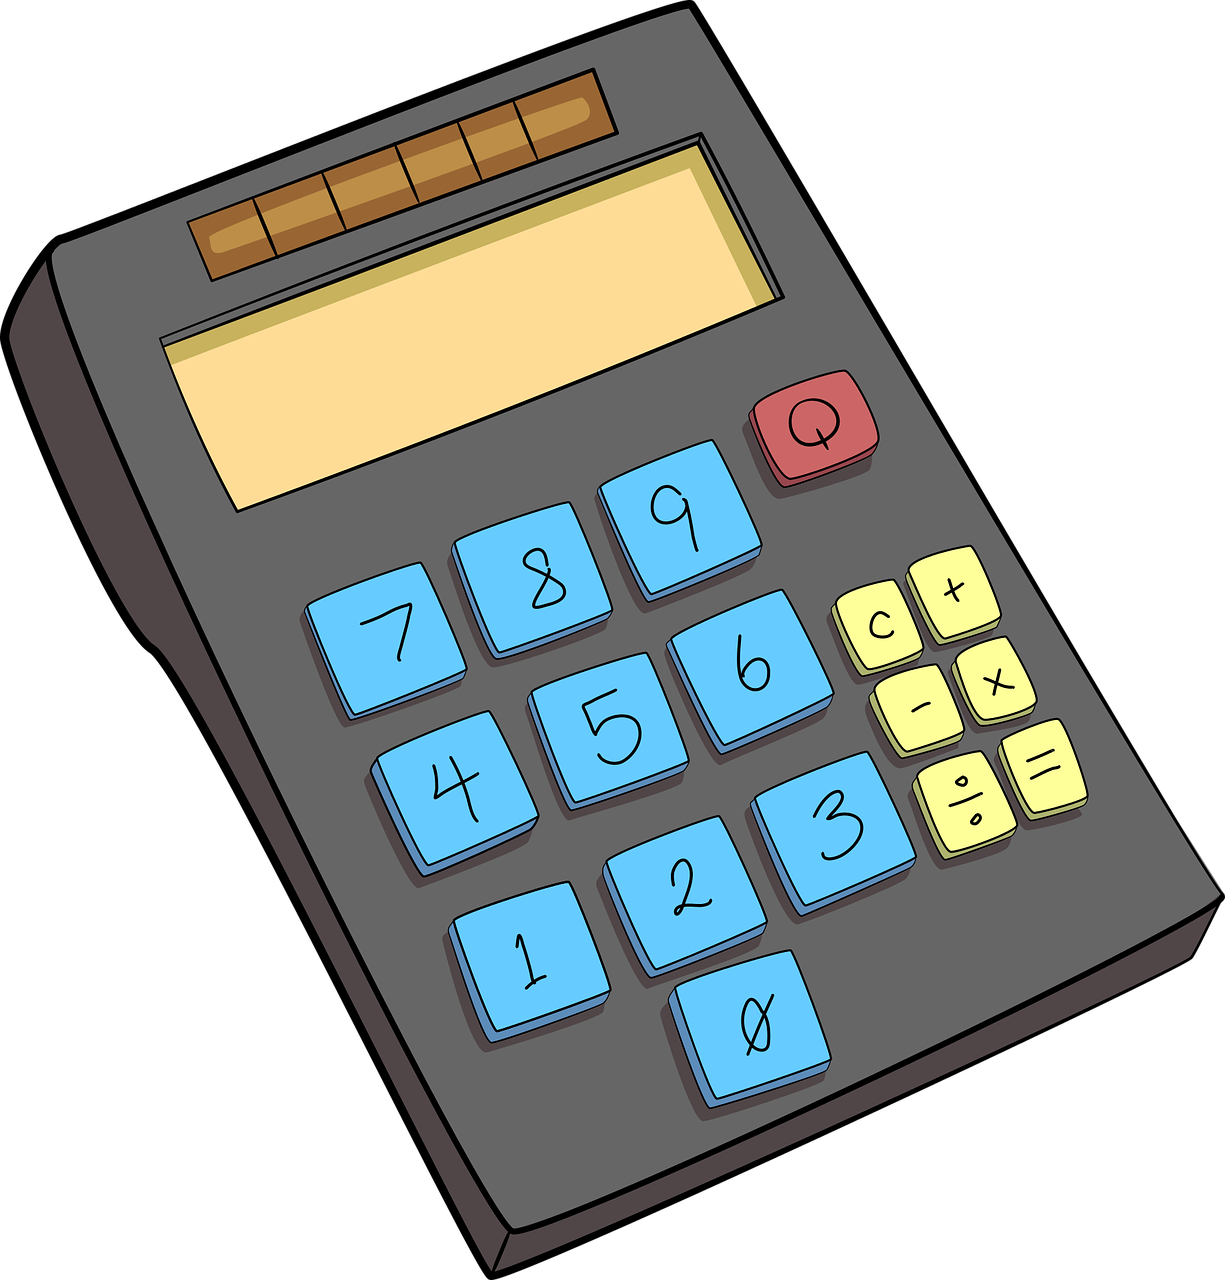 en la imagen aparece una calculadora solar con las teclas azules y amarillas. El botón de encendido es de color rojo